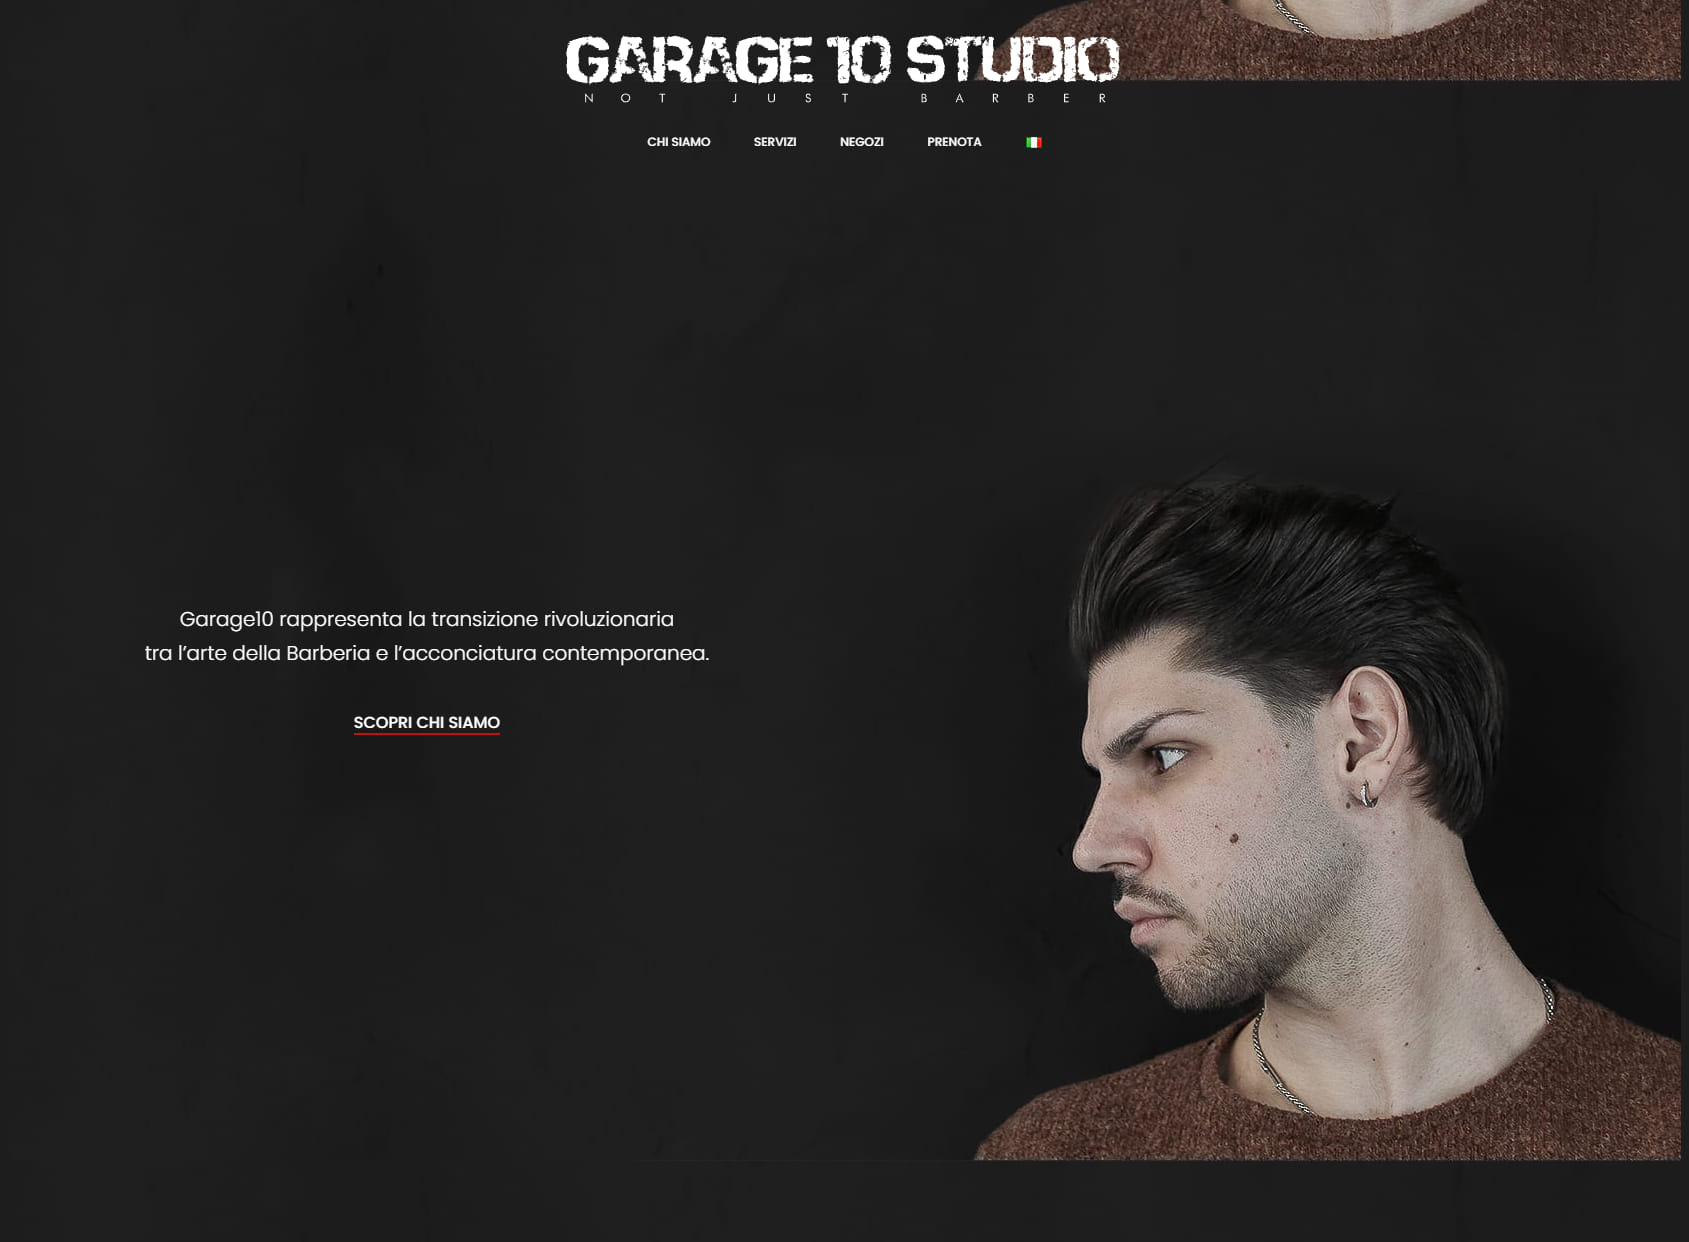 Garage 10 Studio - Como